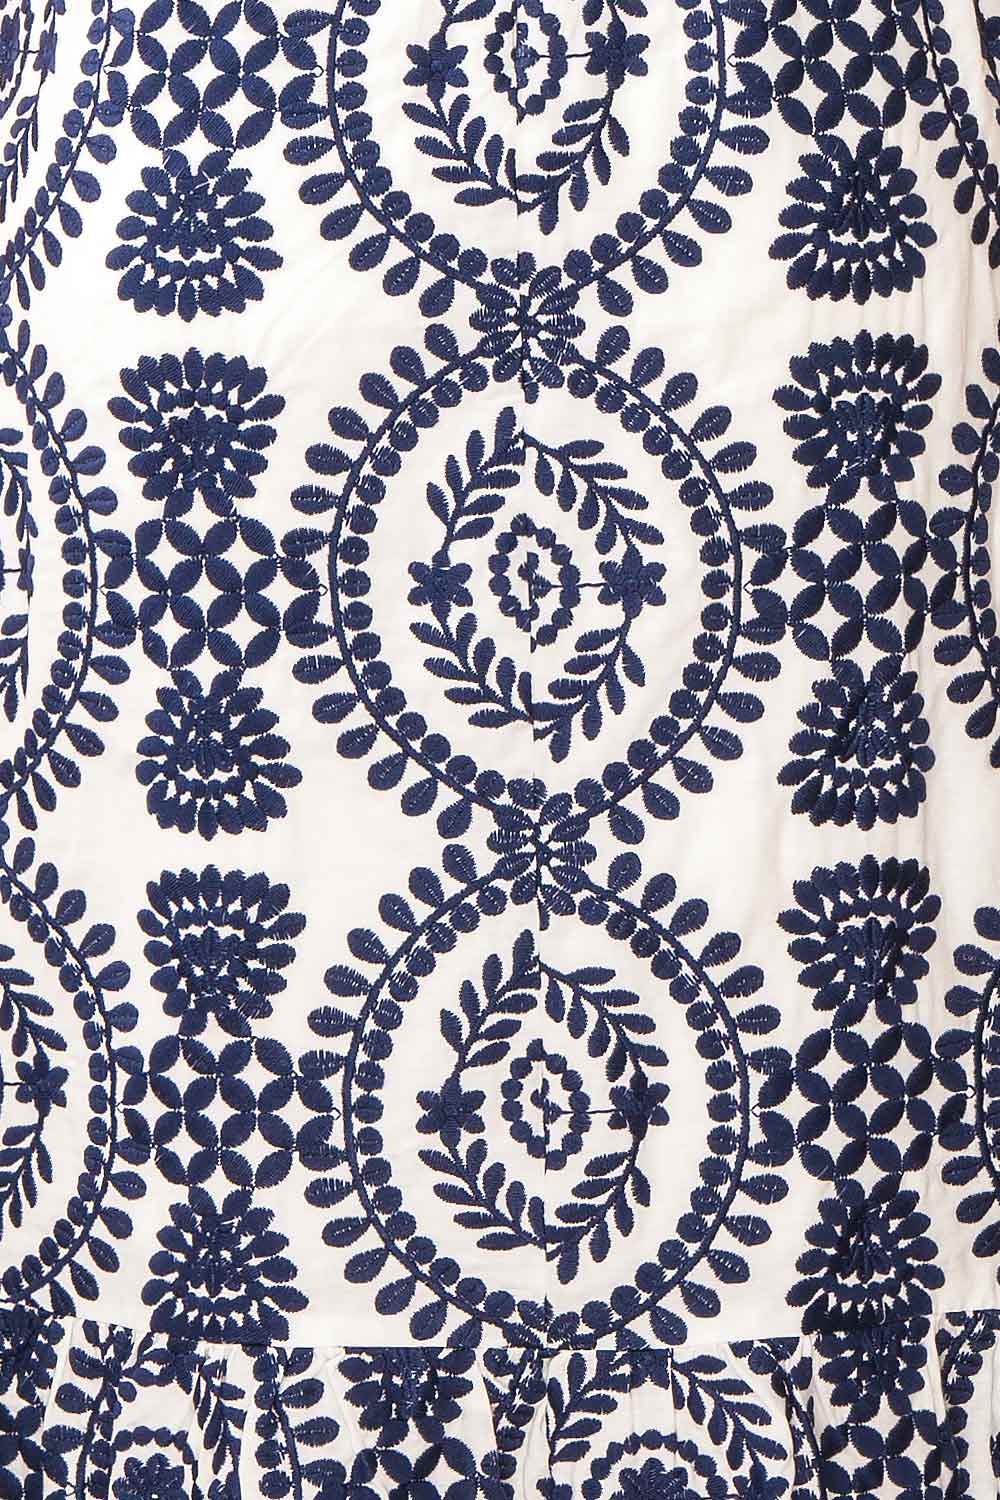 Gisa White Midi Dress w/ Navy Floral Embroidery | Boutique 1861 texture